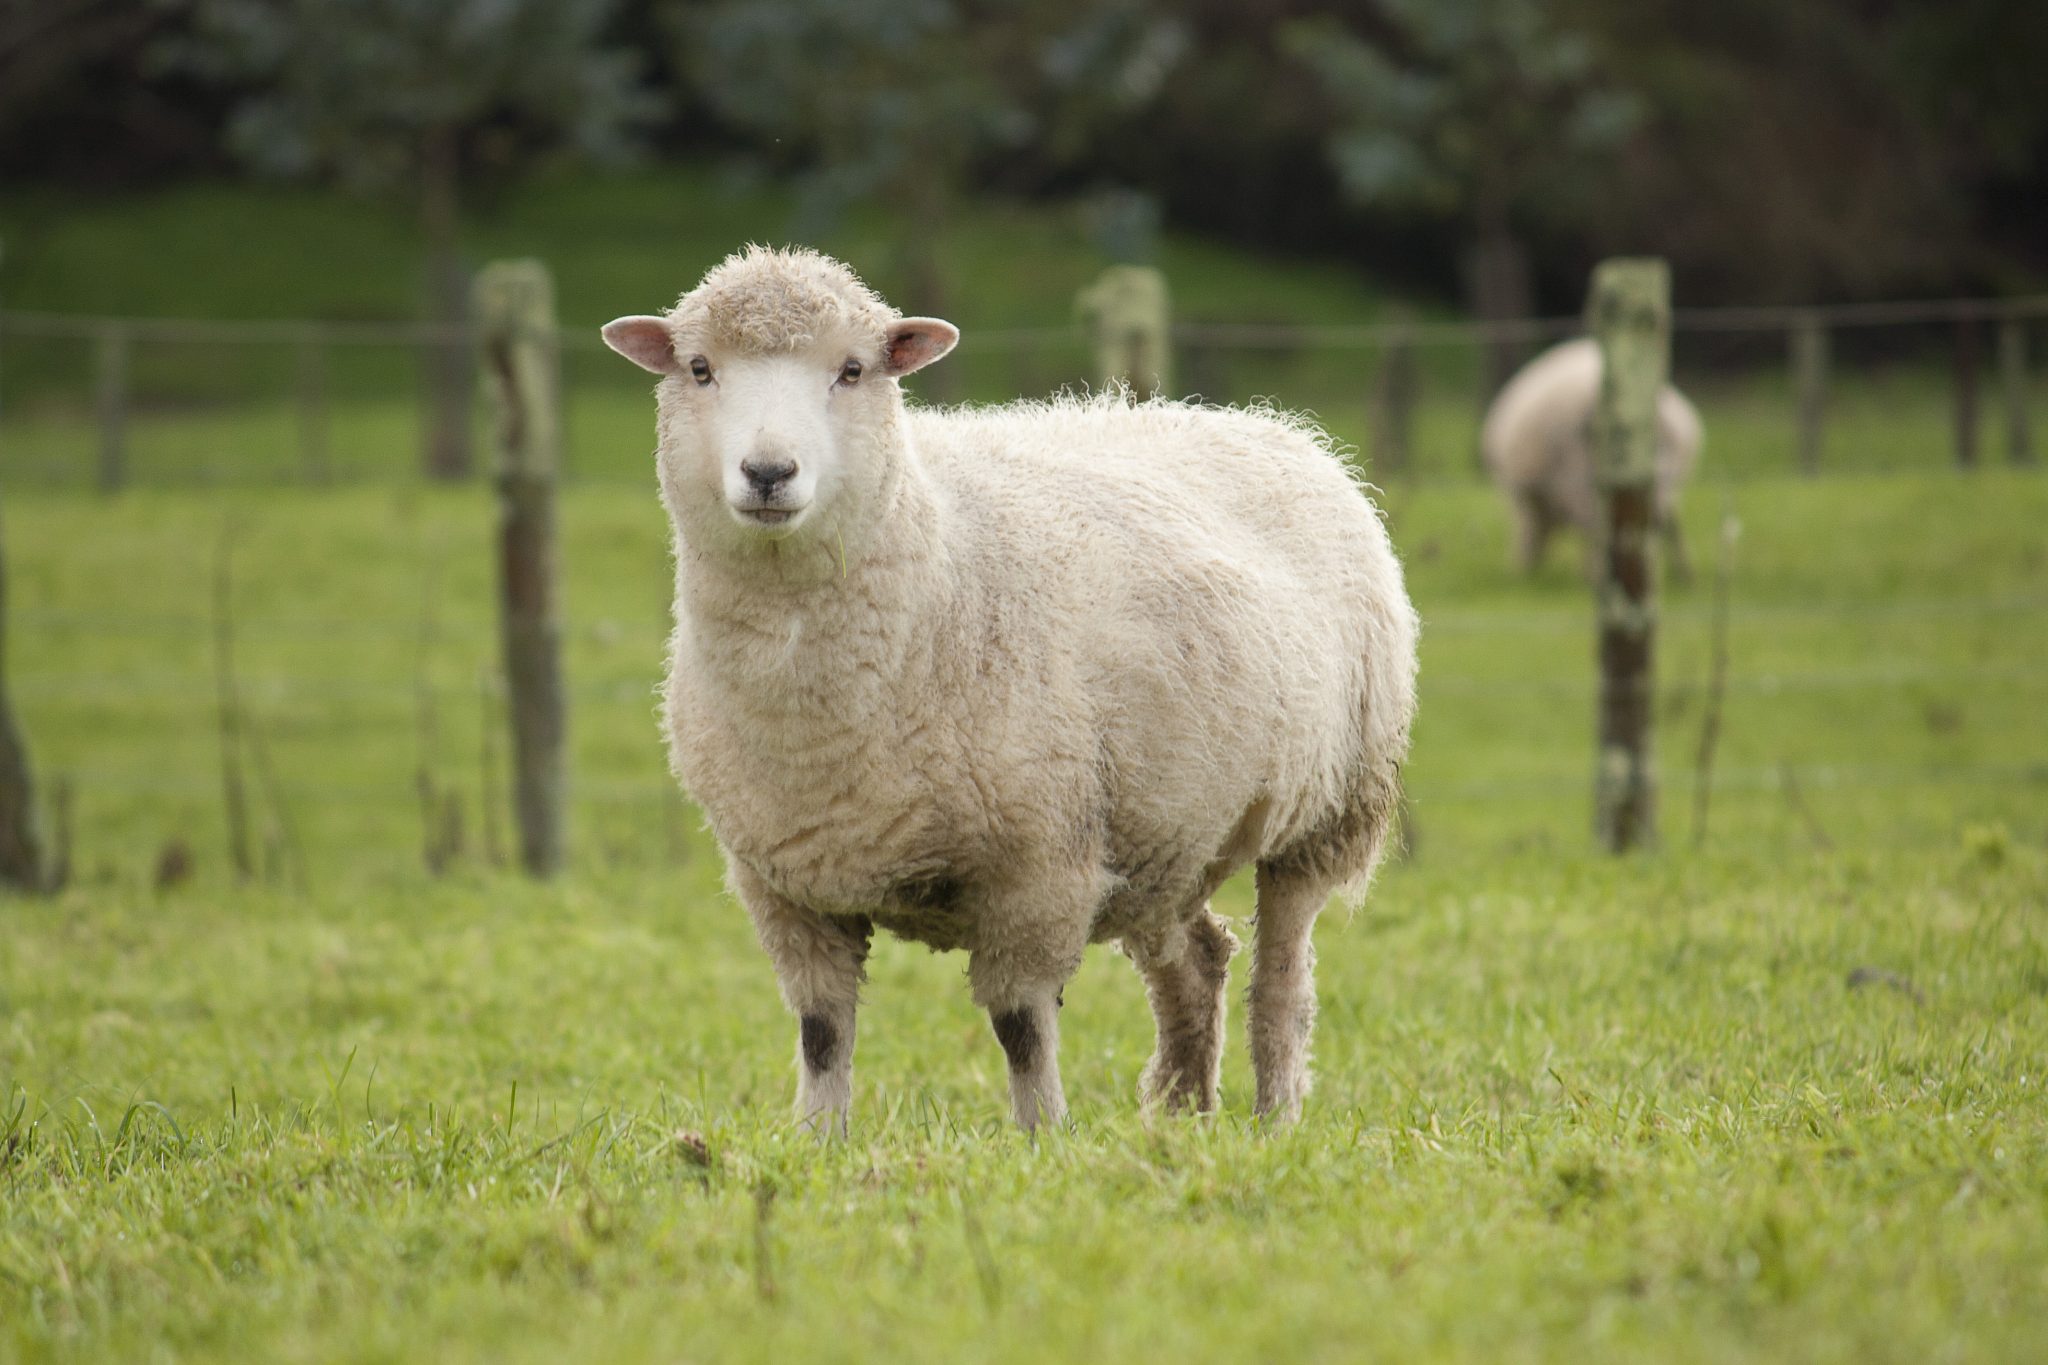 Pics Of A Sheep - KibrisPDR